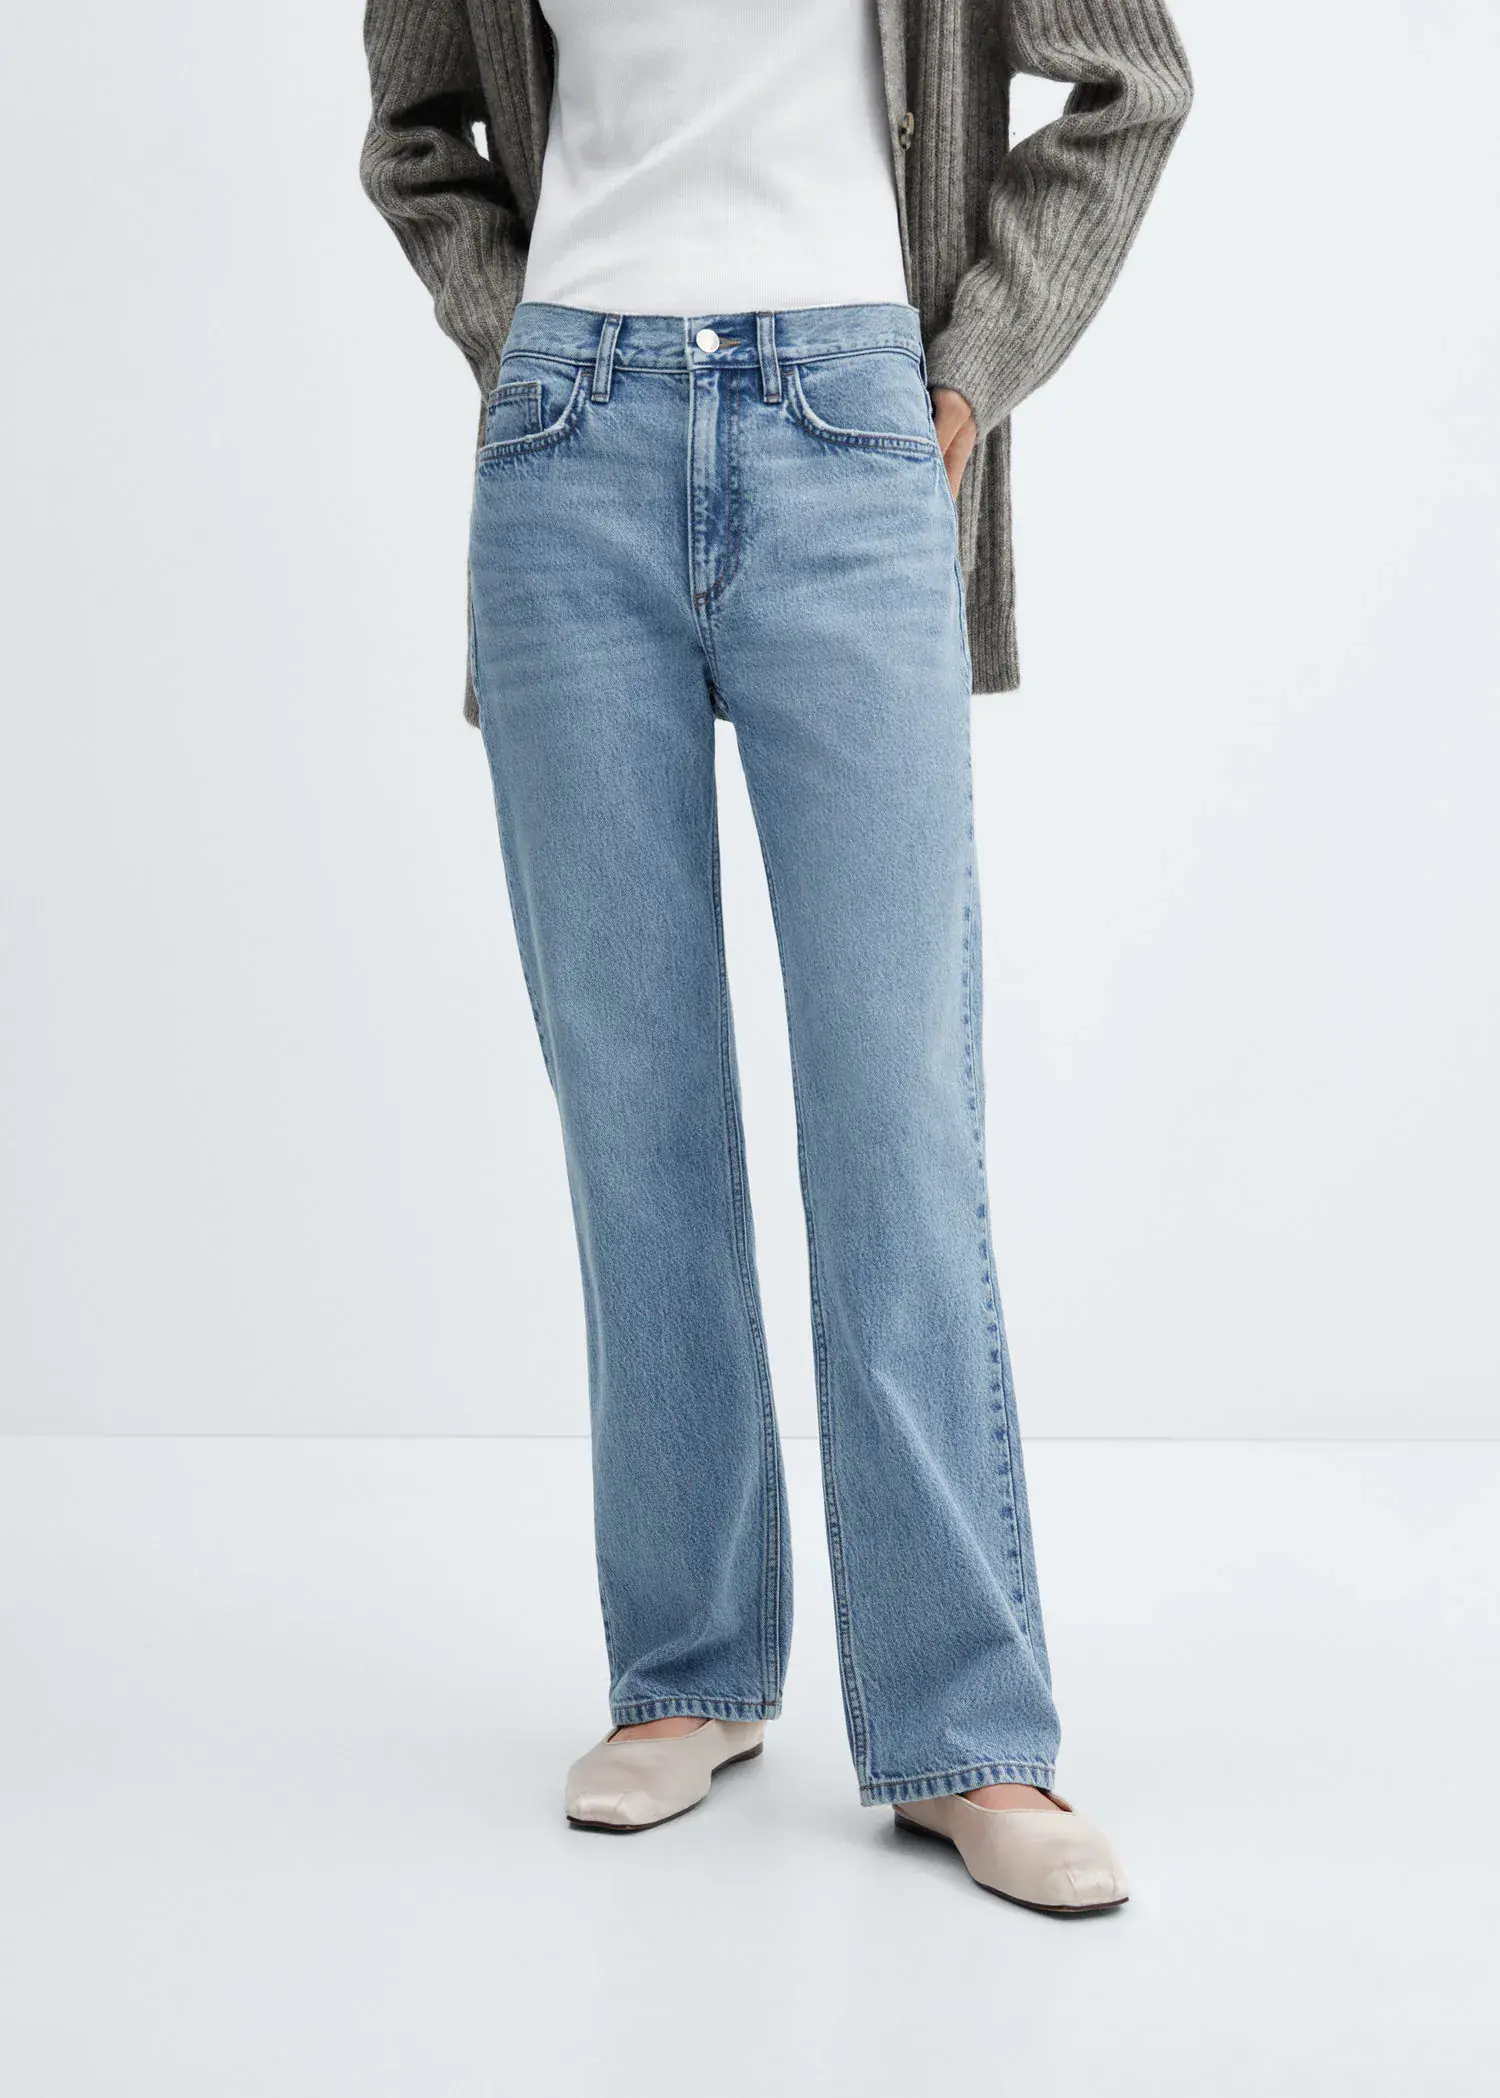 Mango Gerade Jeans mit mittlerem Bund. 2